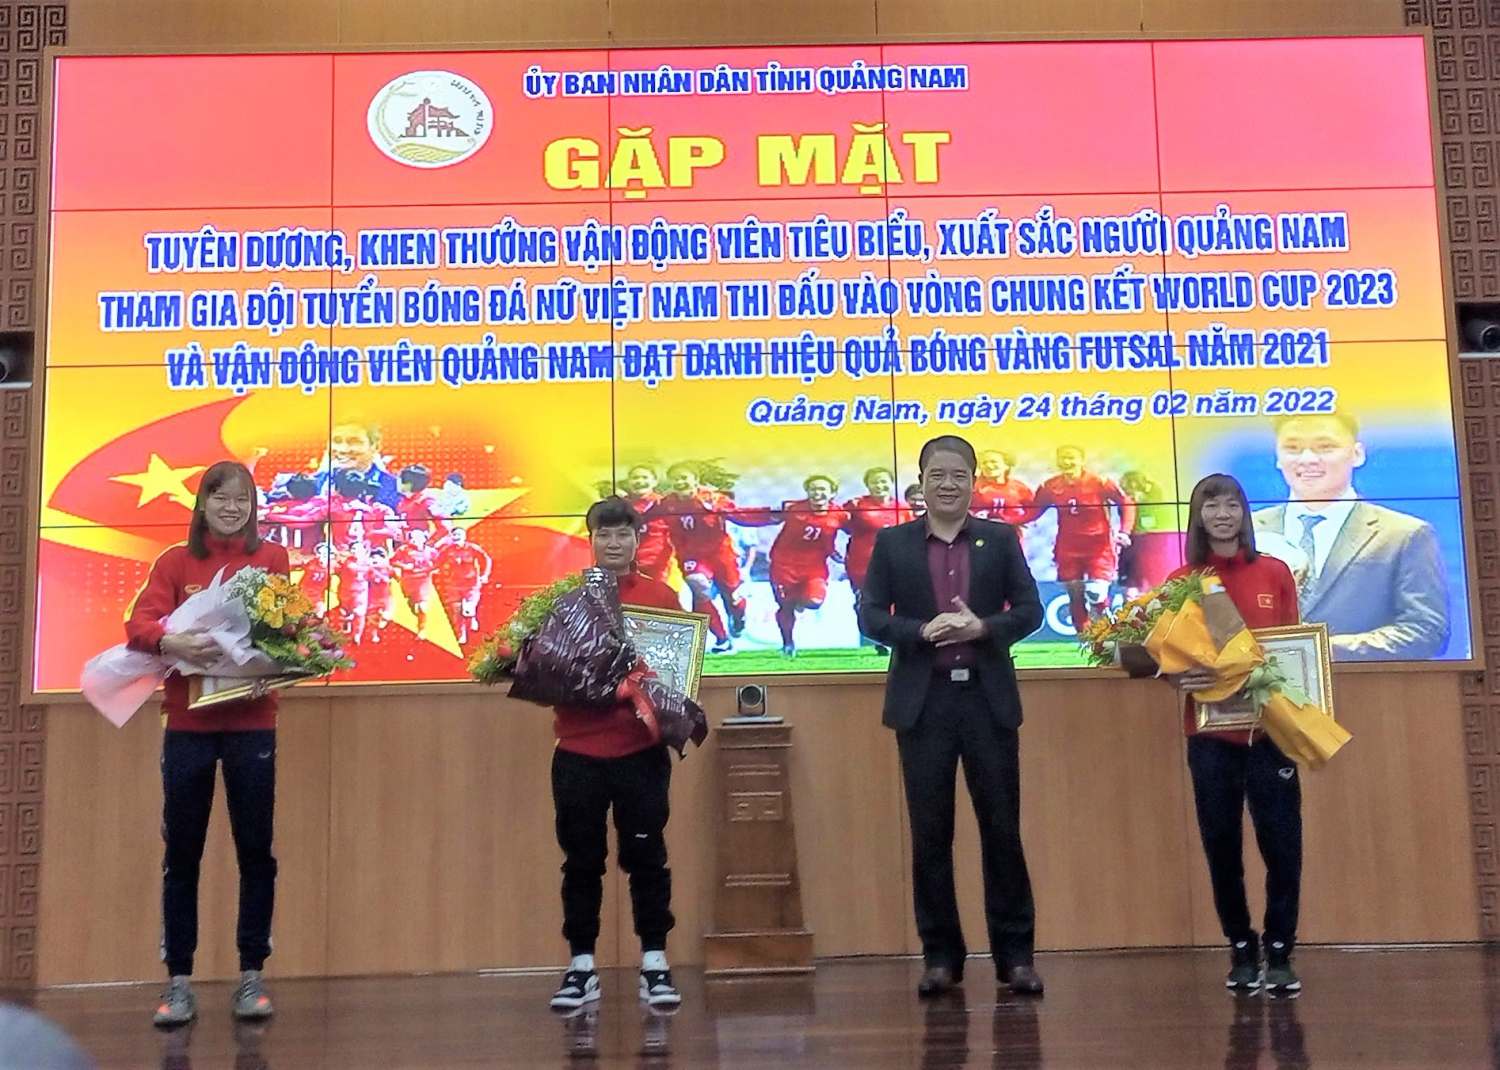 Đồng chí Trần Văn Tân - Phó chủ tịch UBND tỉnh Quảng Nam động viên, tặng bằng khen của chủ tịch UBND tỉnh cho các vận động viên kèm tiền thưởng 10 triệu đồng.